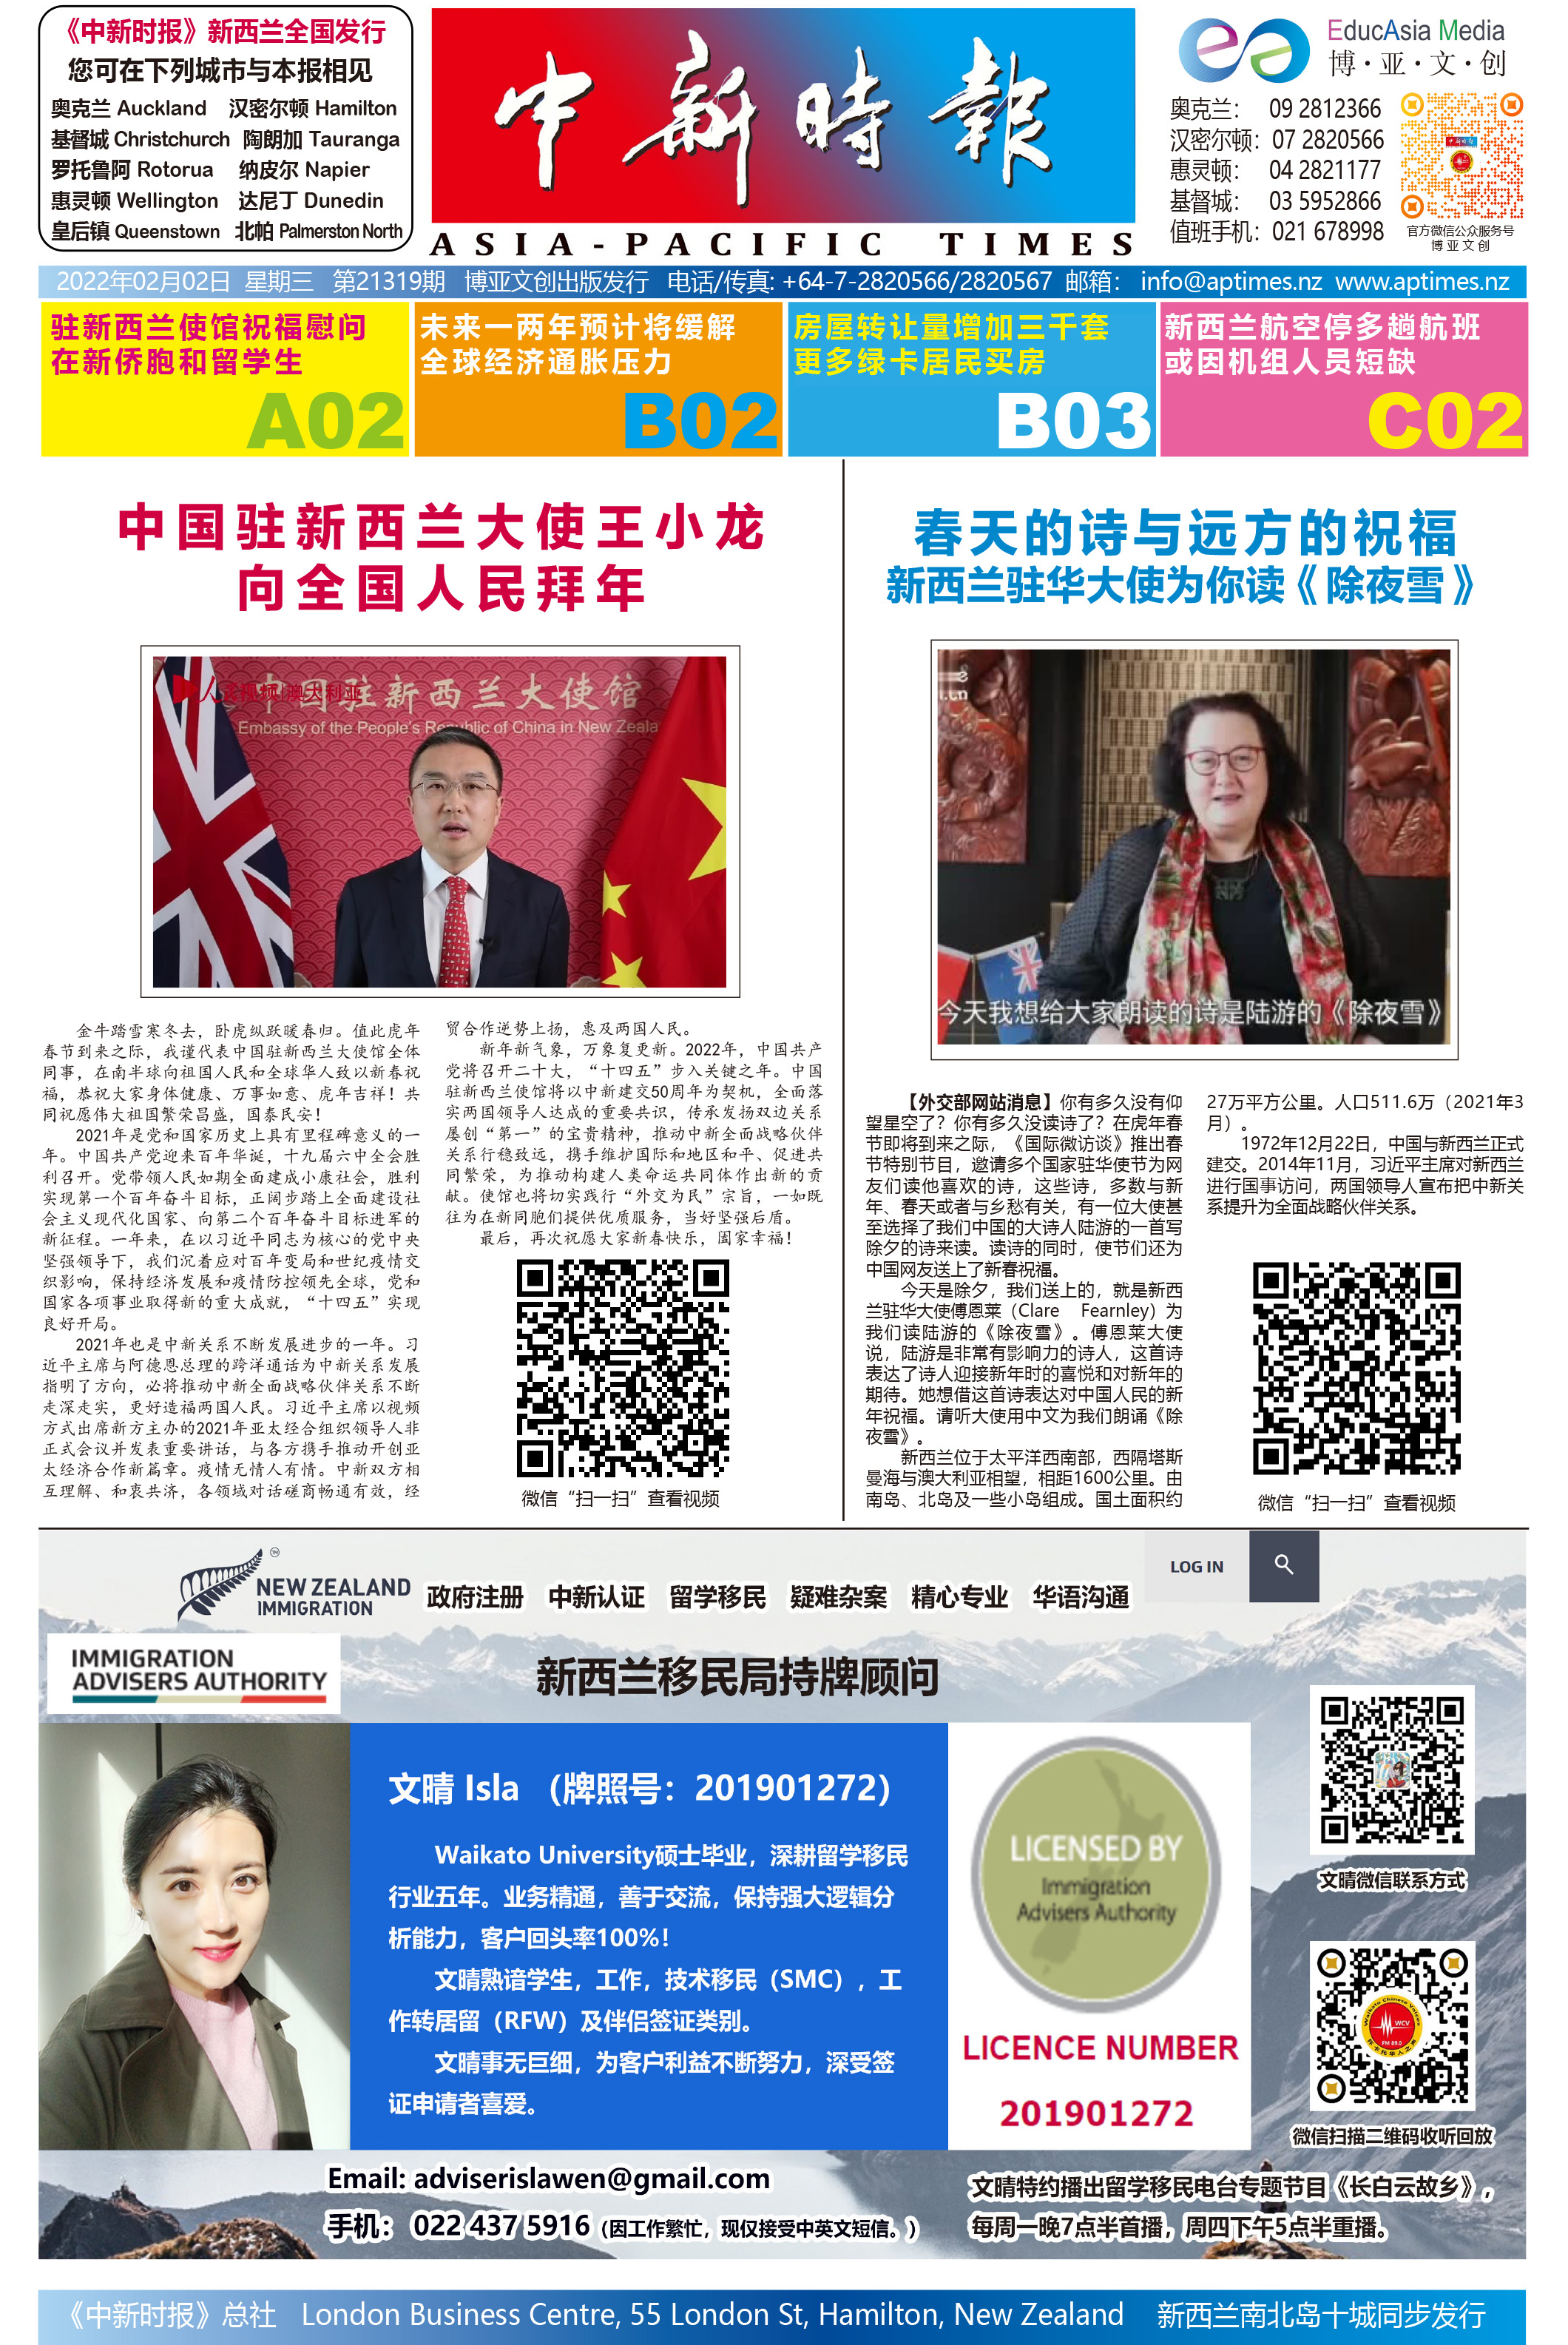 中国驻新西兰大使王小龙向全国人民拜年 / 新西兰驻华大使傅恩莱诵诗送新春祝福